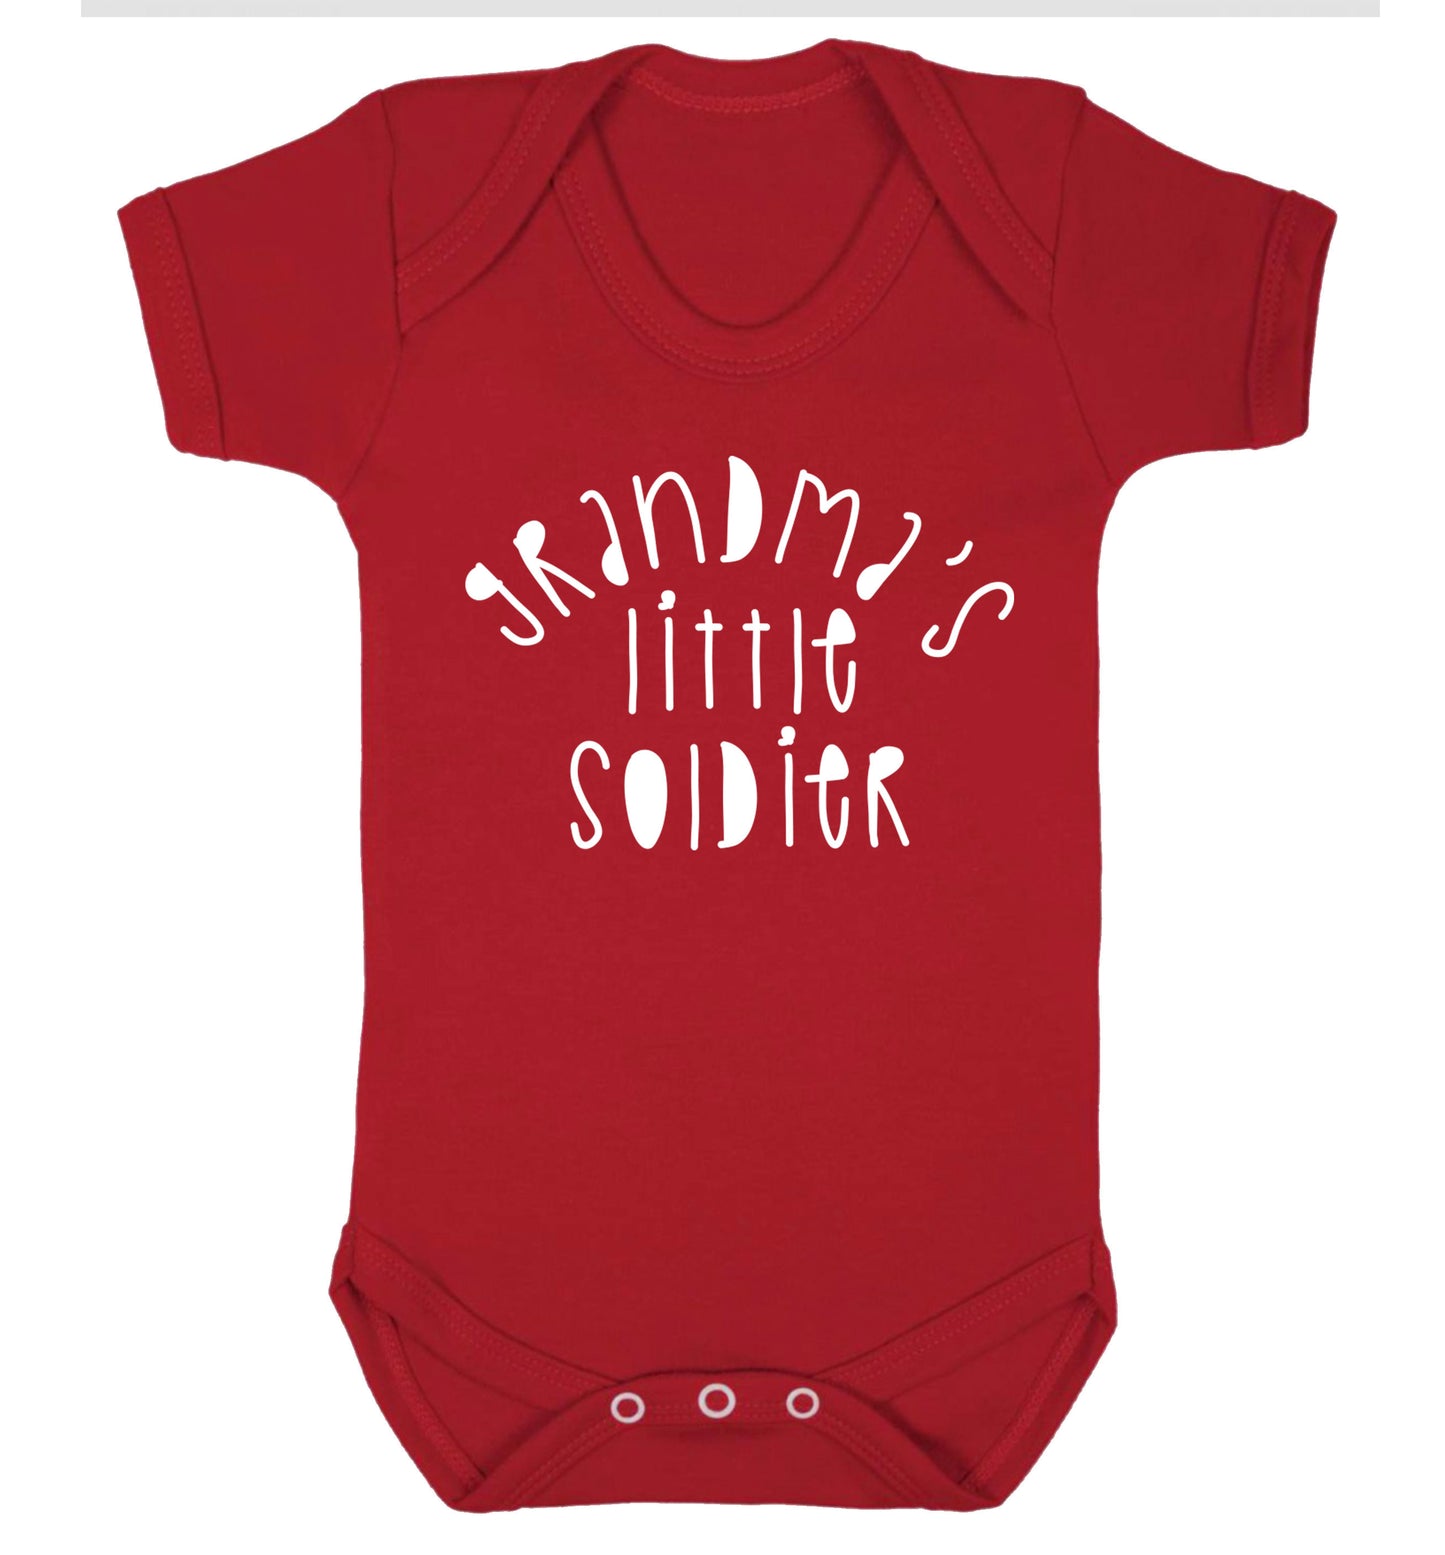 Grandma's little soldier Baby Vest red 18-24 months